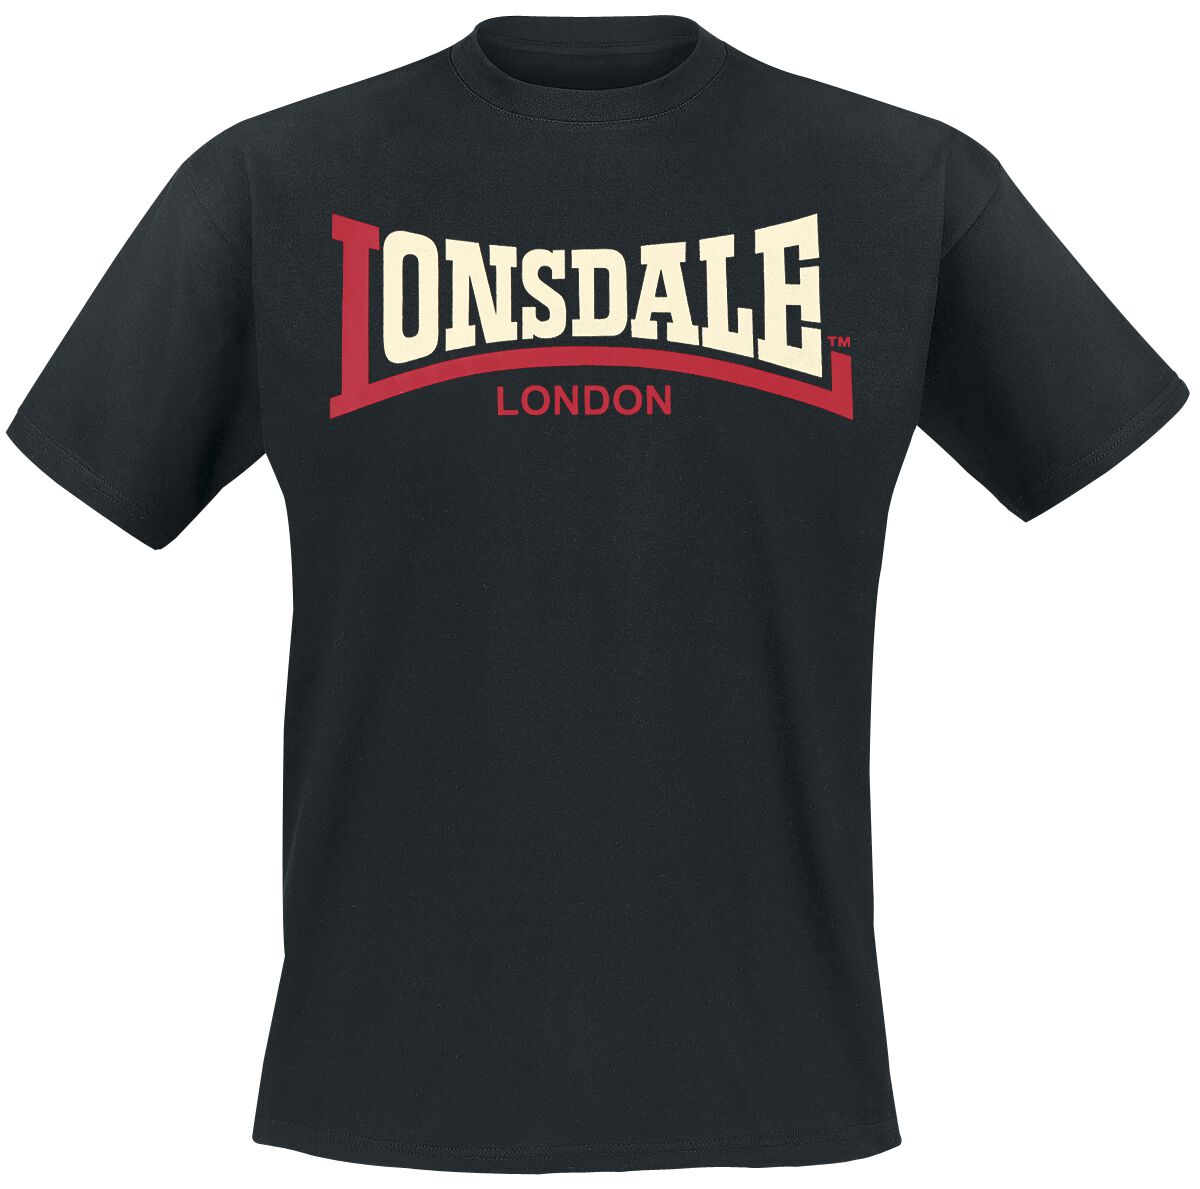 Lonsdale London T-Shirt - Two Tone - M bis 3XL - für Männer - Größe M - schwarz